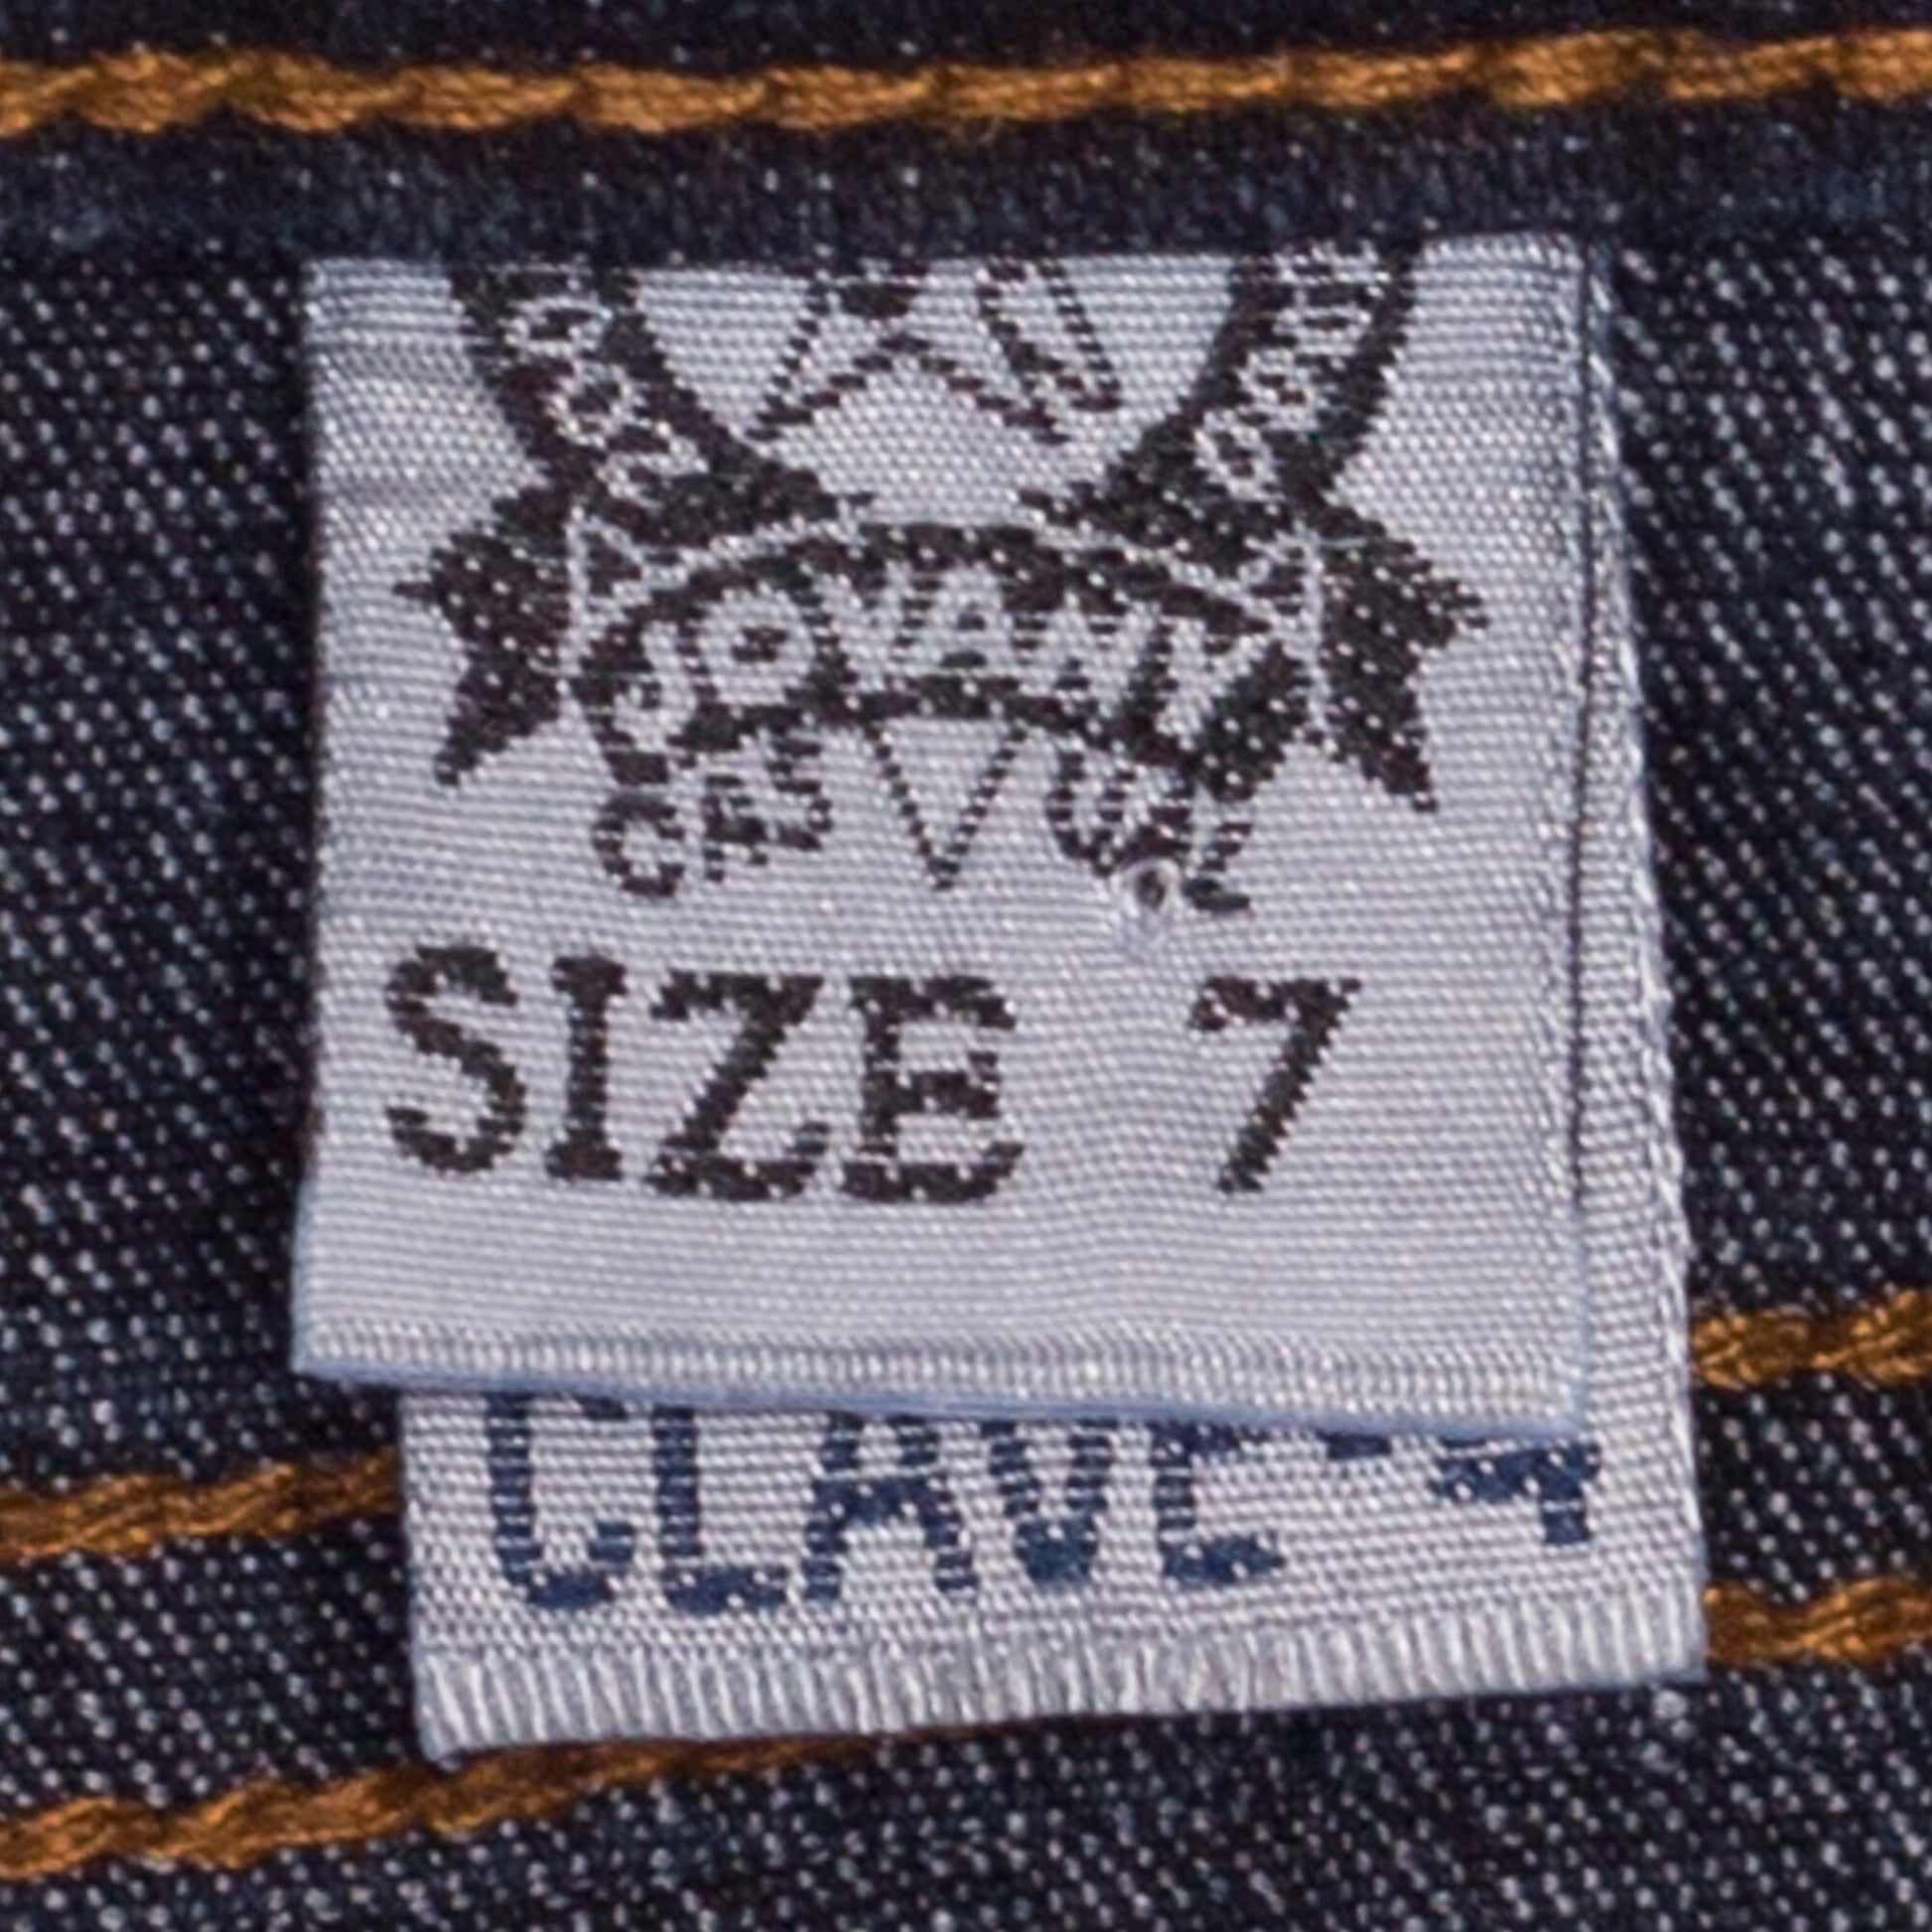 Y2K Low Rise Patchwork Pocket Jeans - Small | Vintage Dark Wash Denim Flared Jeans